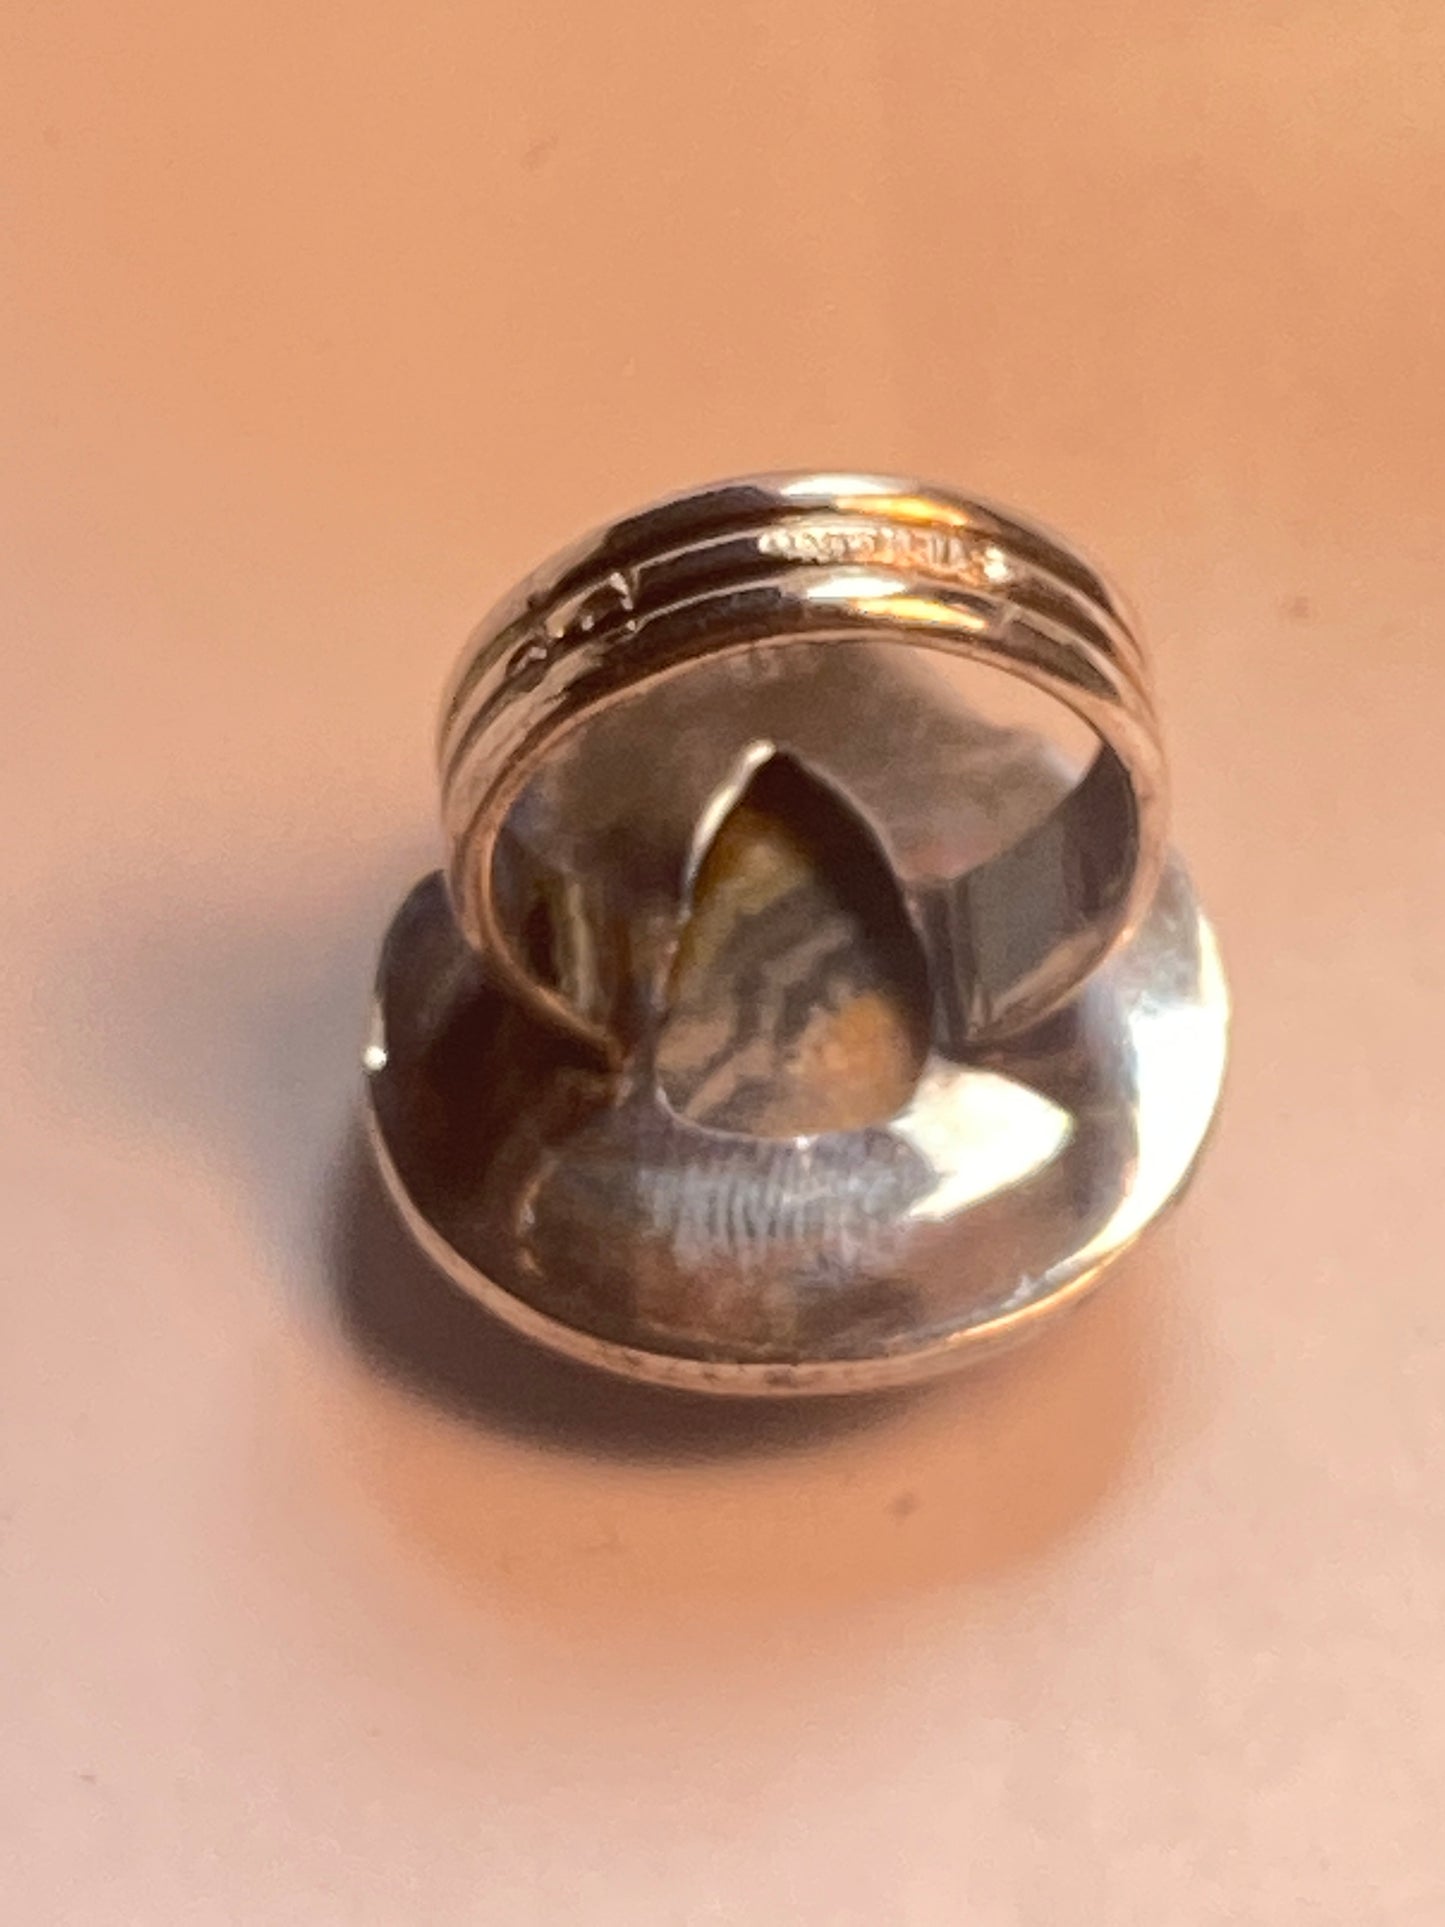 Bumblebee jasper ring size 6.75 southwest sterling silver women girls